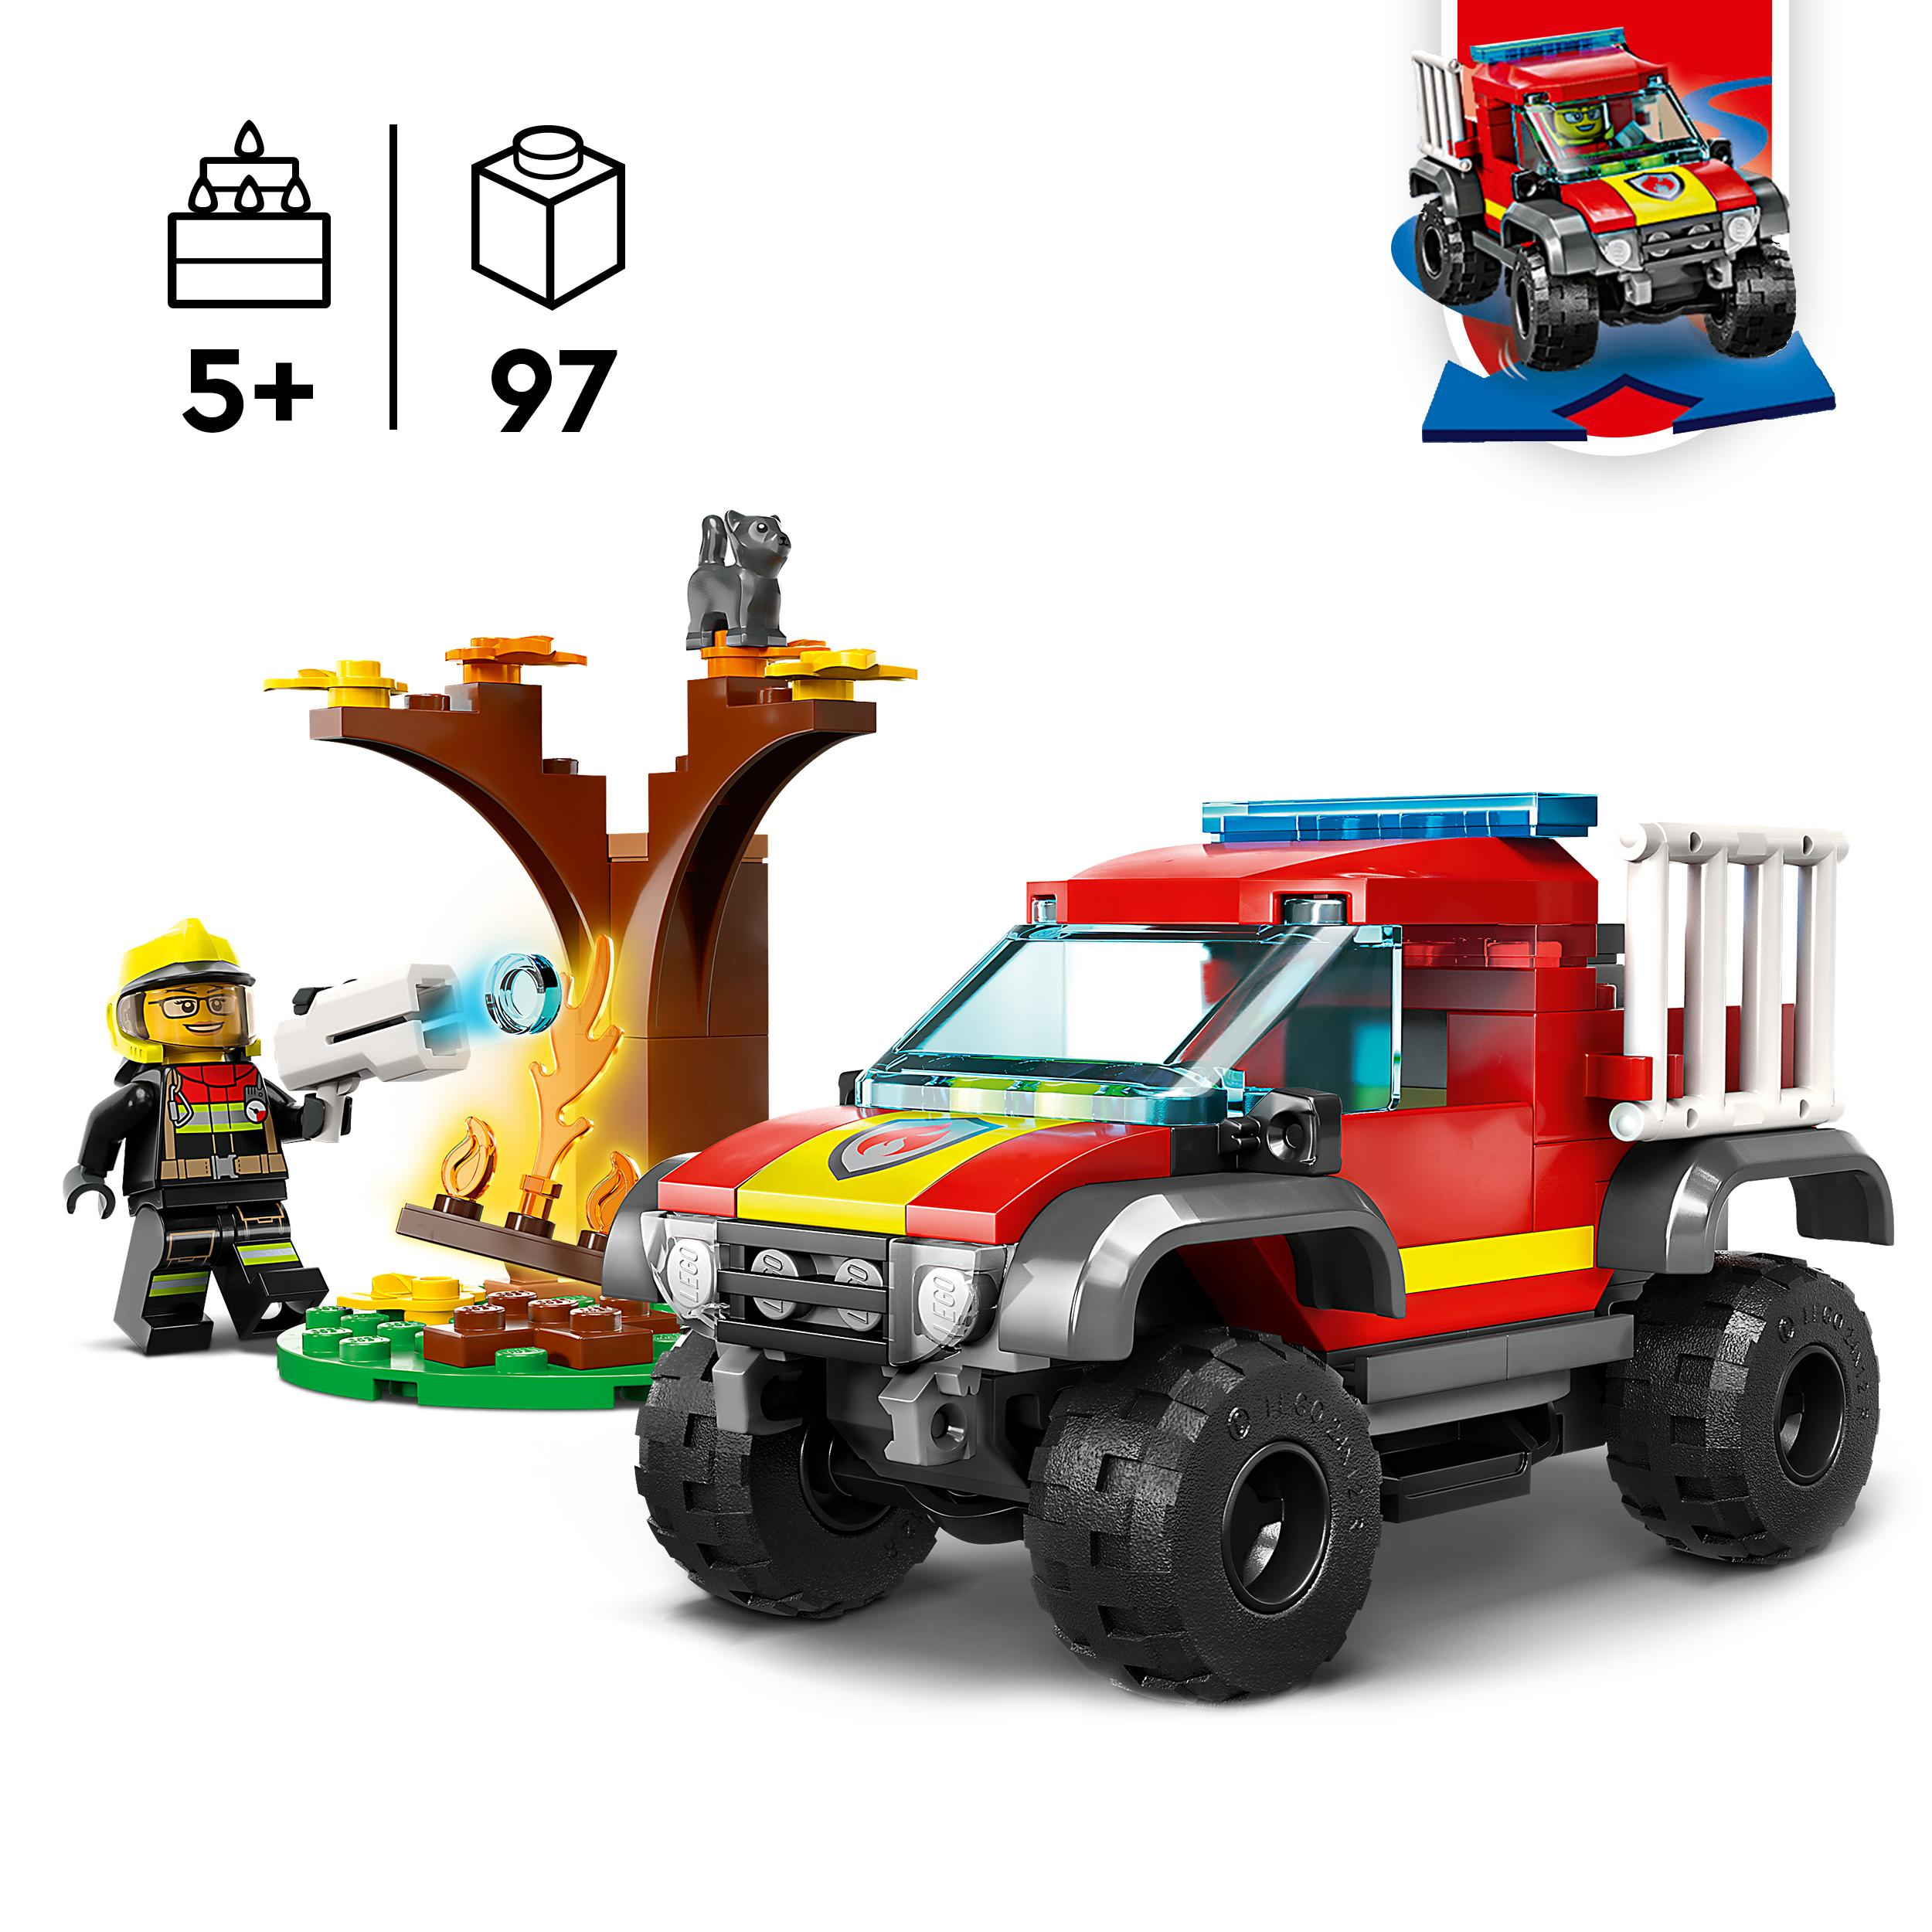 LEGO City 60393 Feuerwehr-Pickup Bausatz, Mehrfarbig